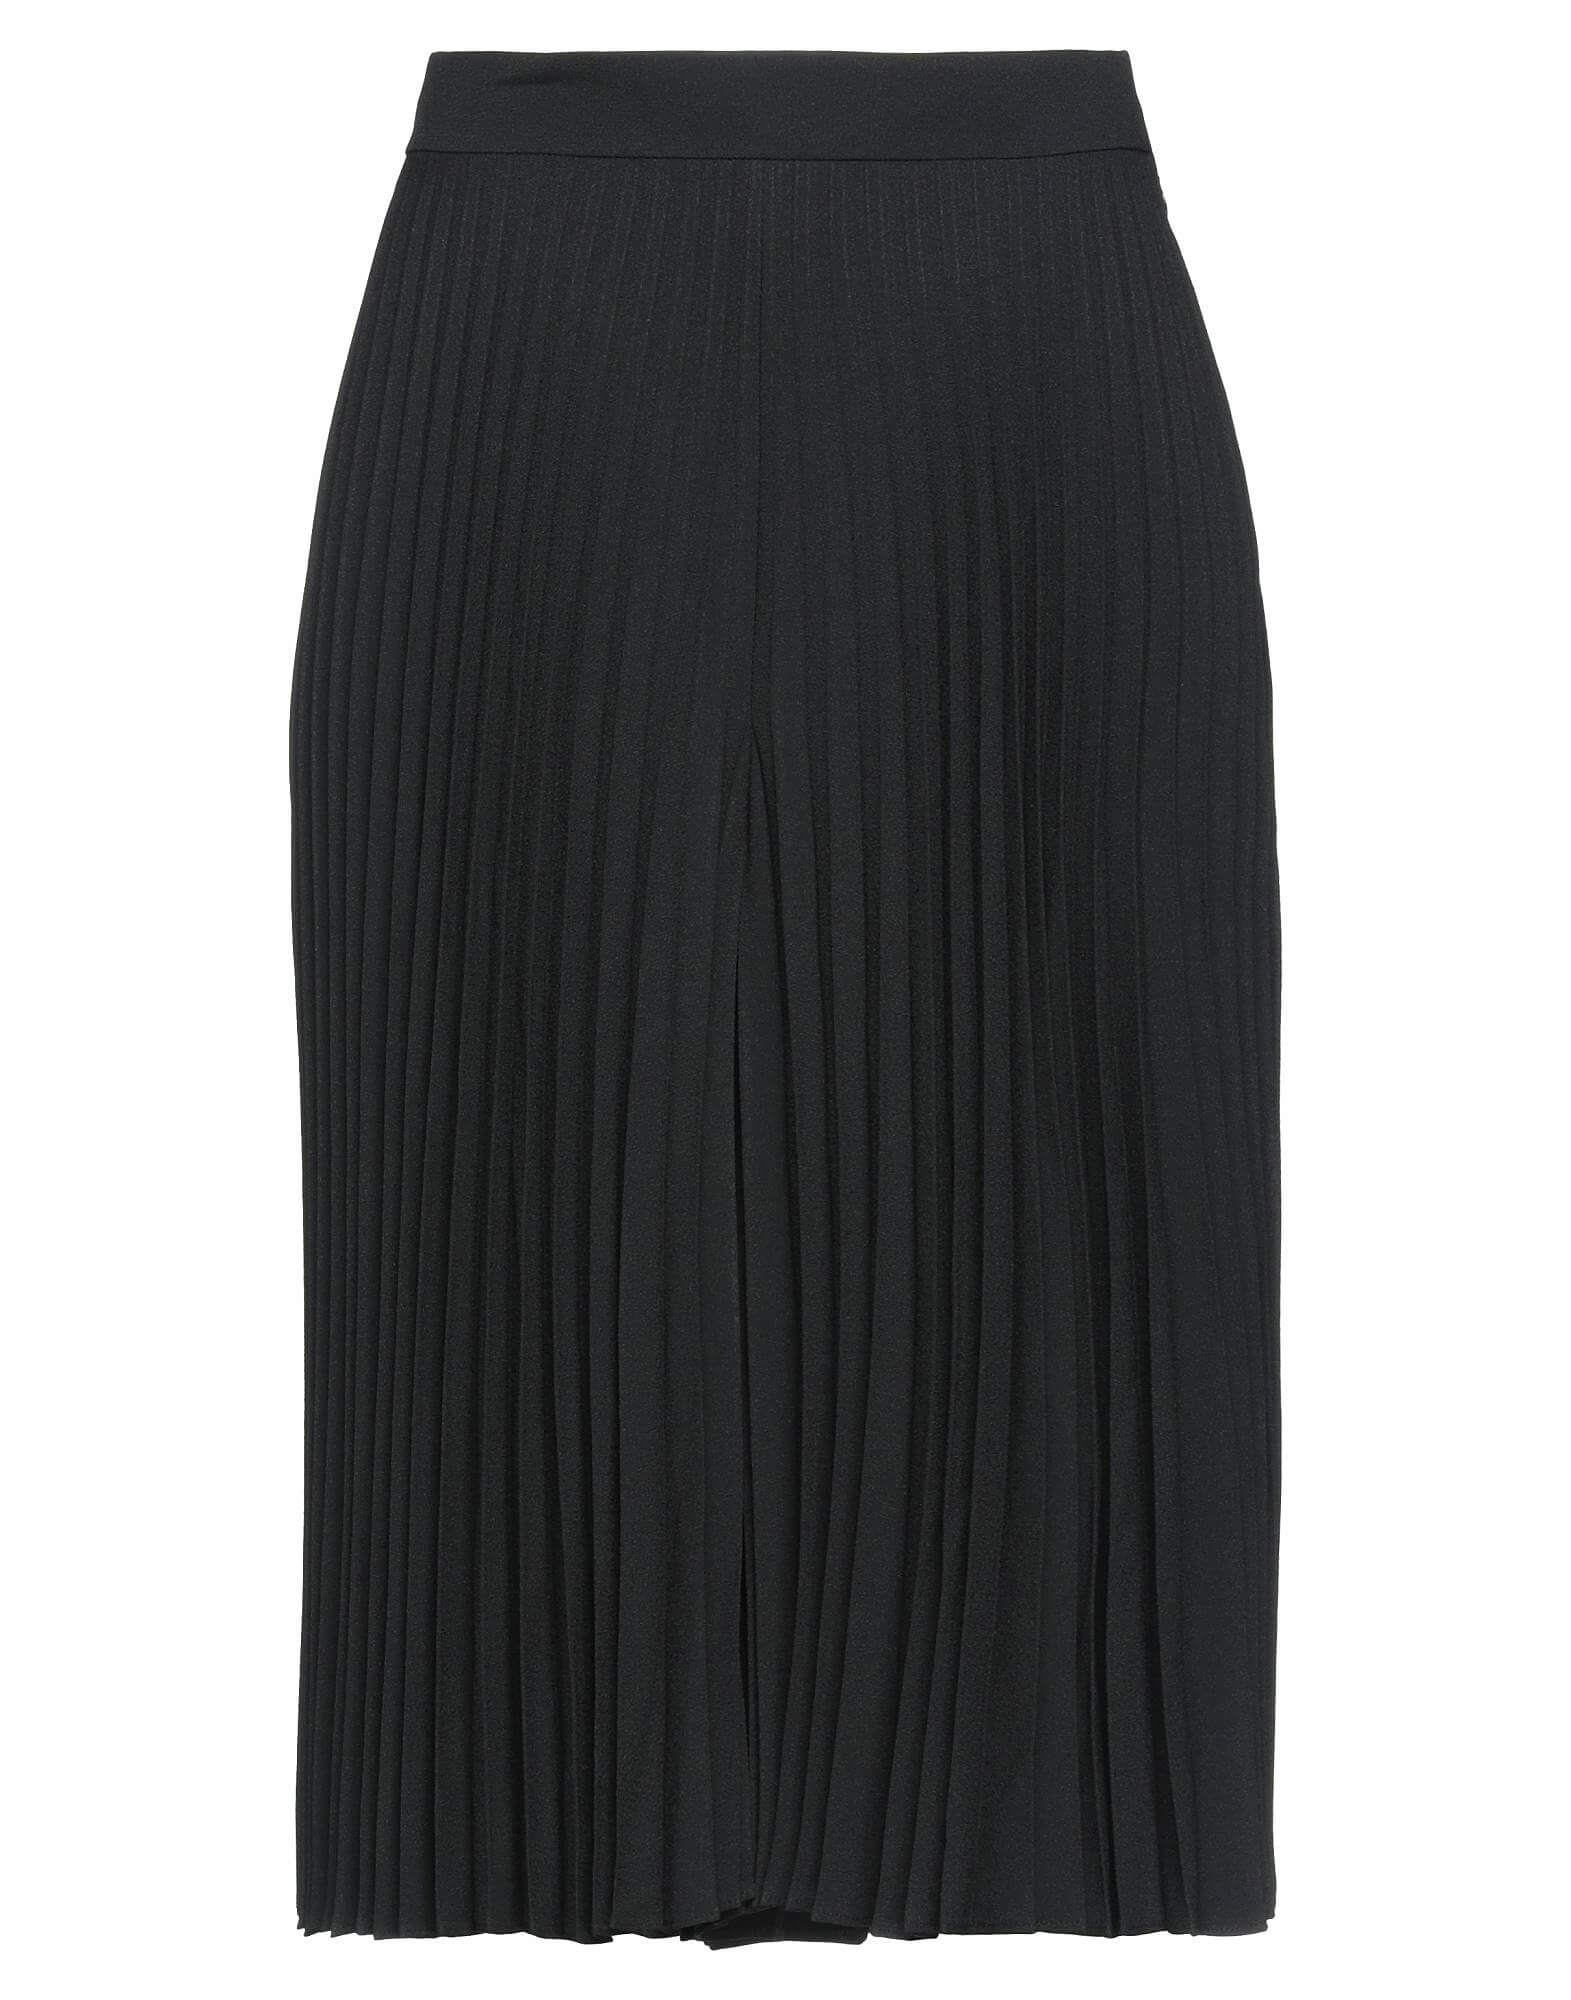 Плиссированная юбка-шорты CELINE, черный юбка черная красивая 42 размер